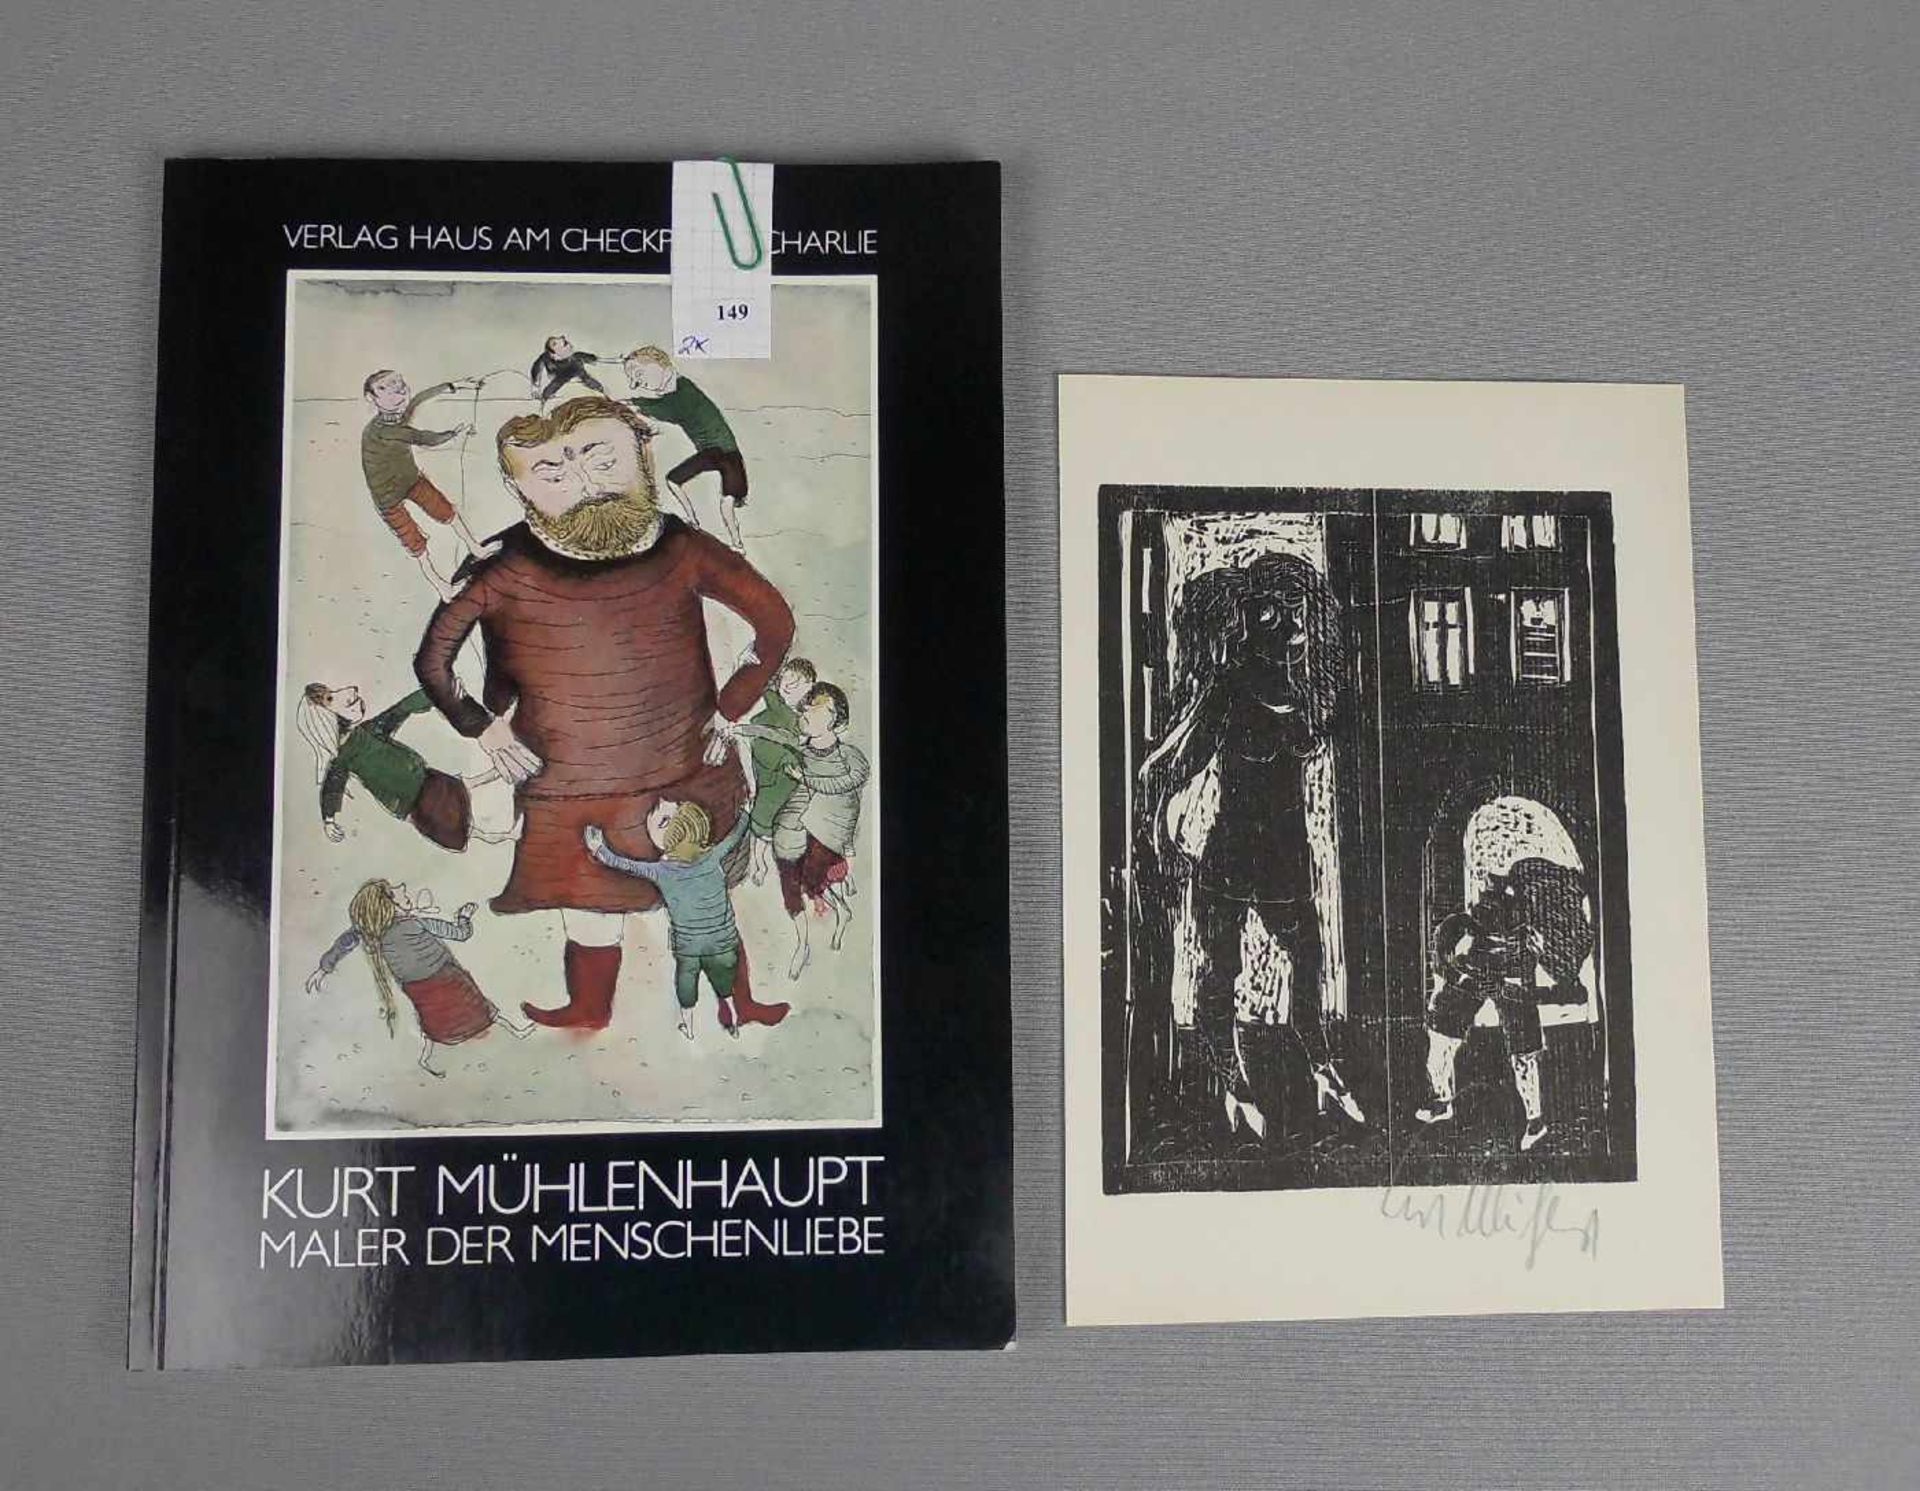 MÜHLENHAUPT, KURT (1921-2006), Holzschnitt und Katalog, jeweils mit Bleistift handsigniert. Katalog: